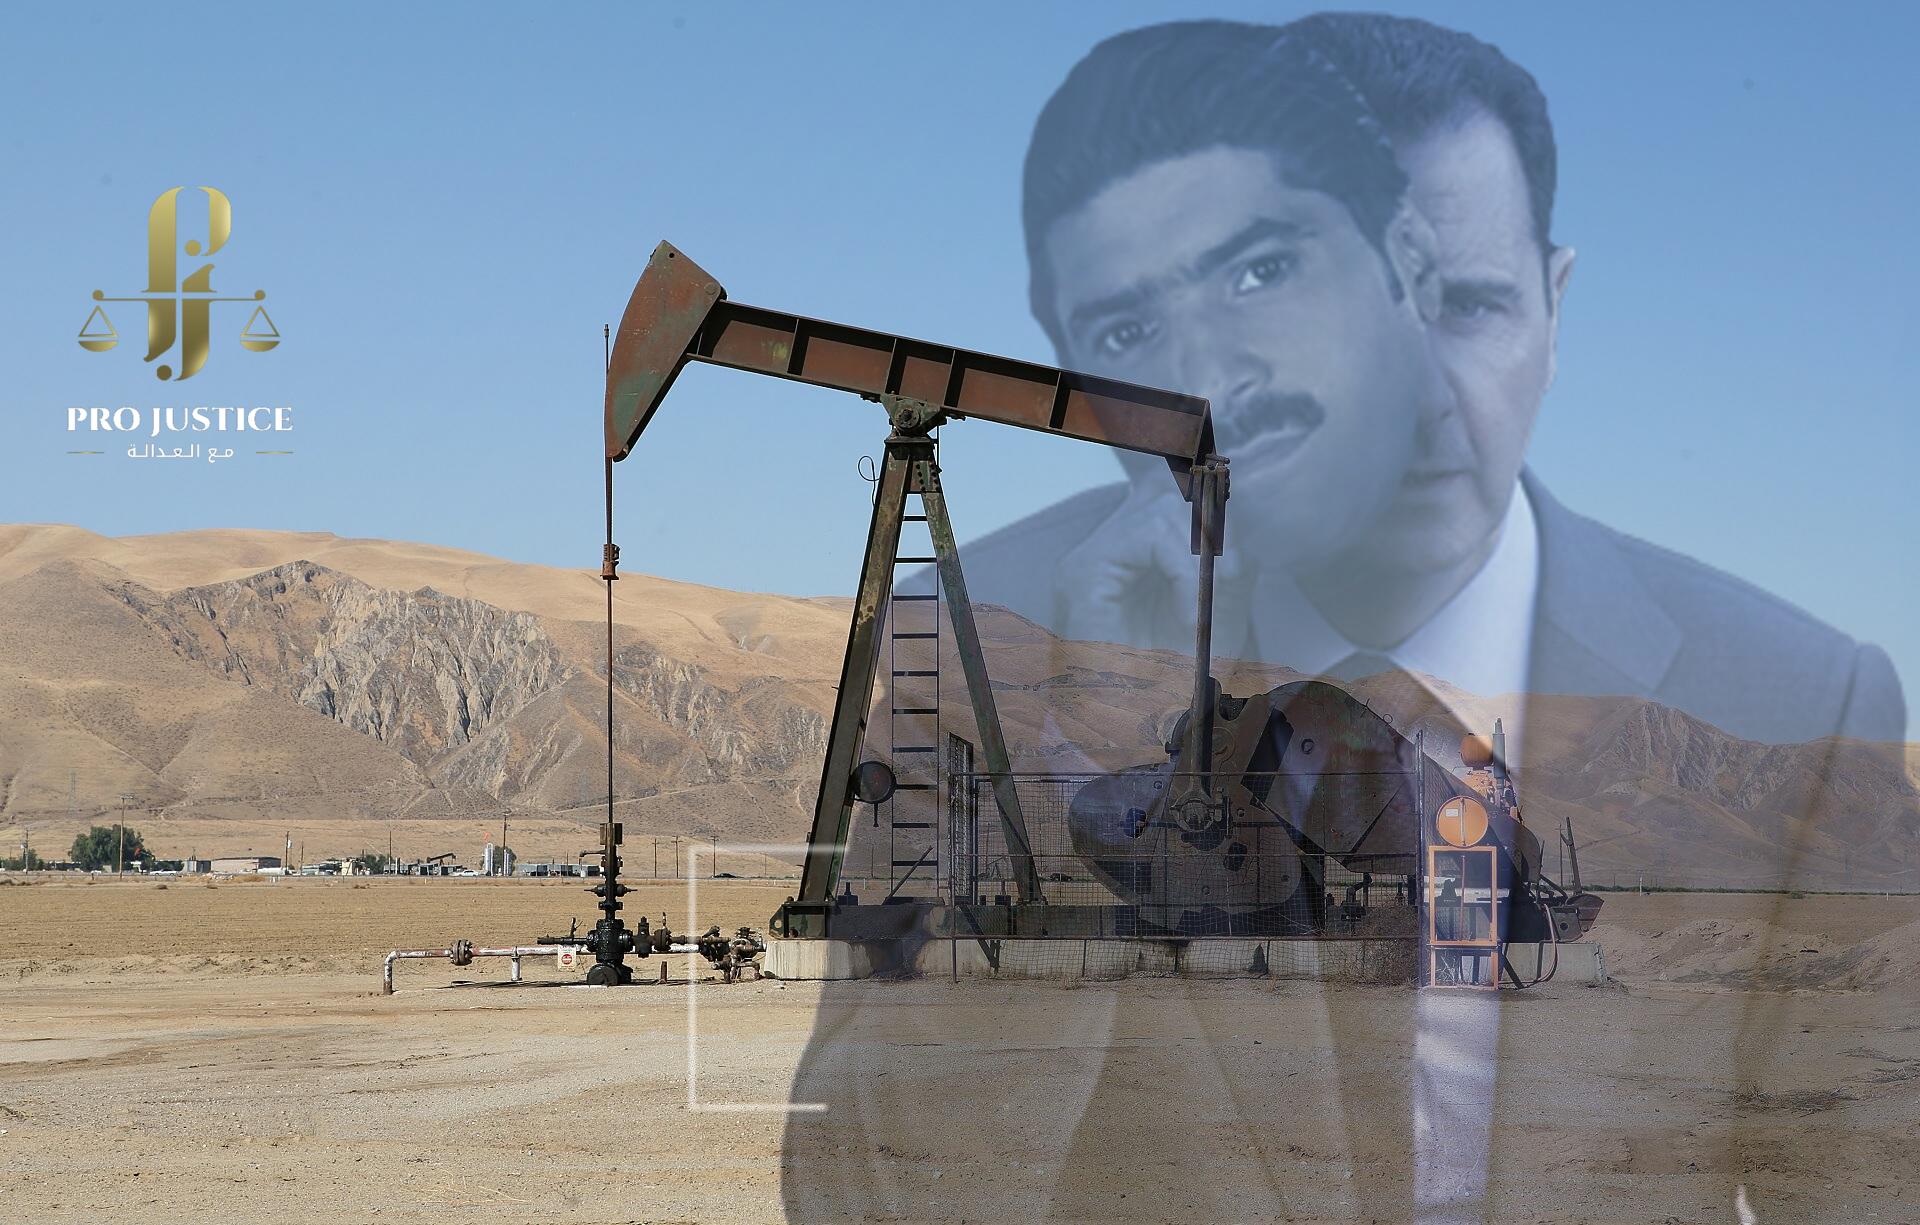 (العربية) “نظام الأسد” يرفع أسعار الوقود مع بيع شركة خاصة للمشتقات النفطية